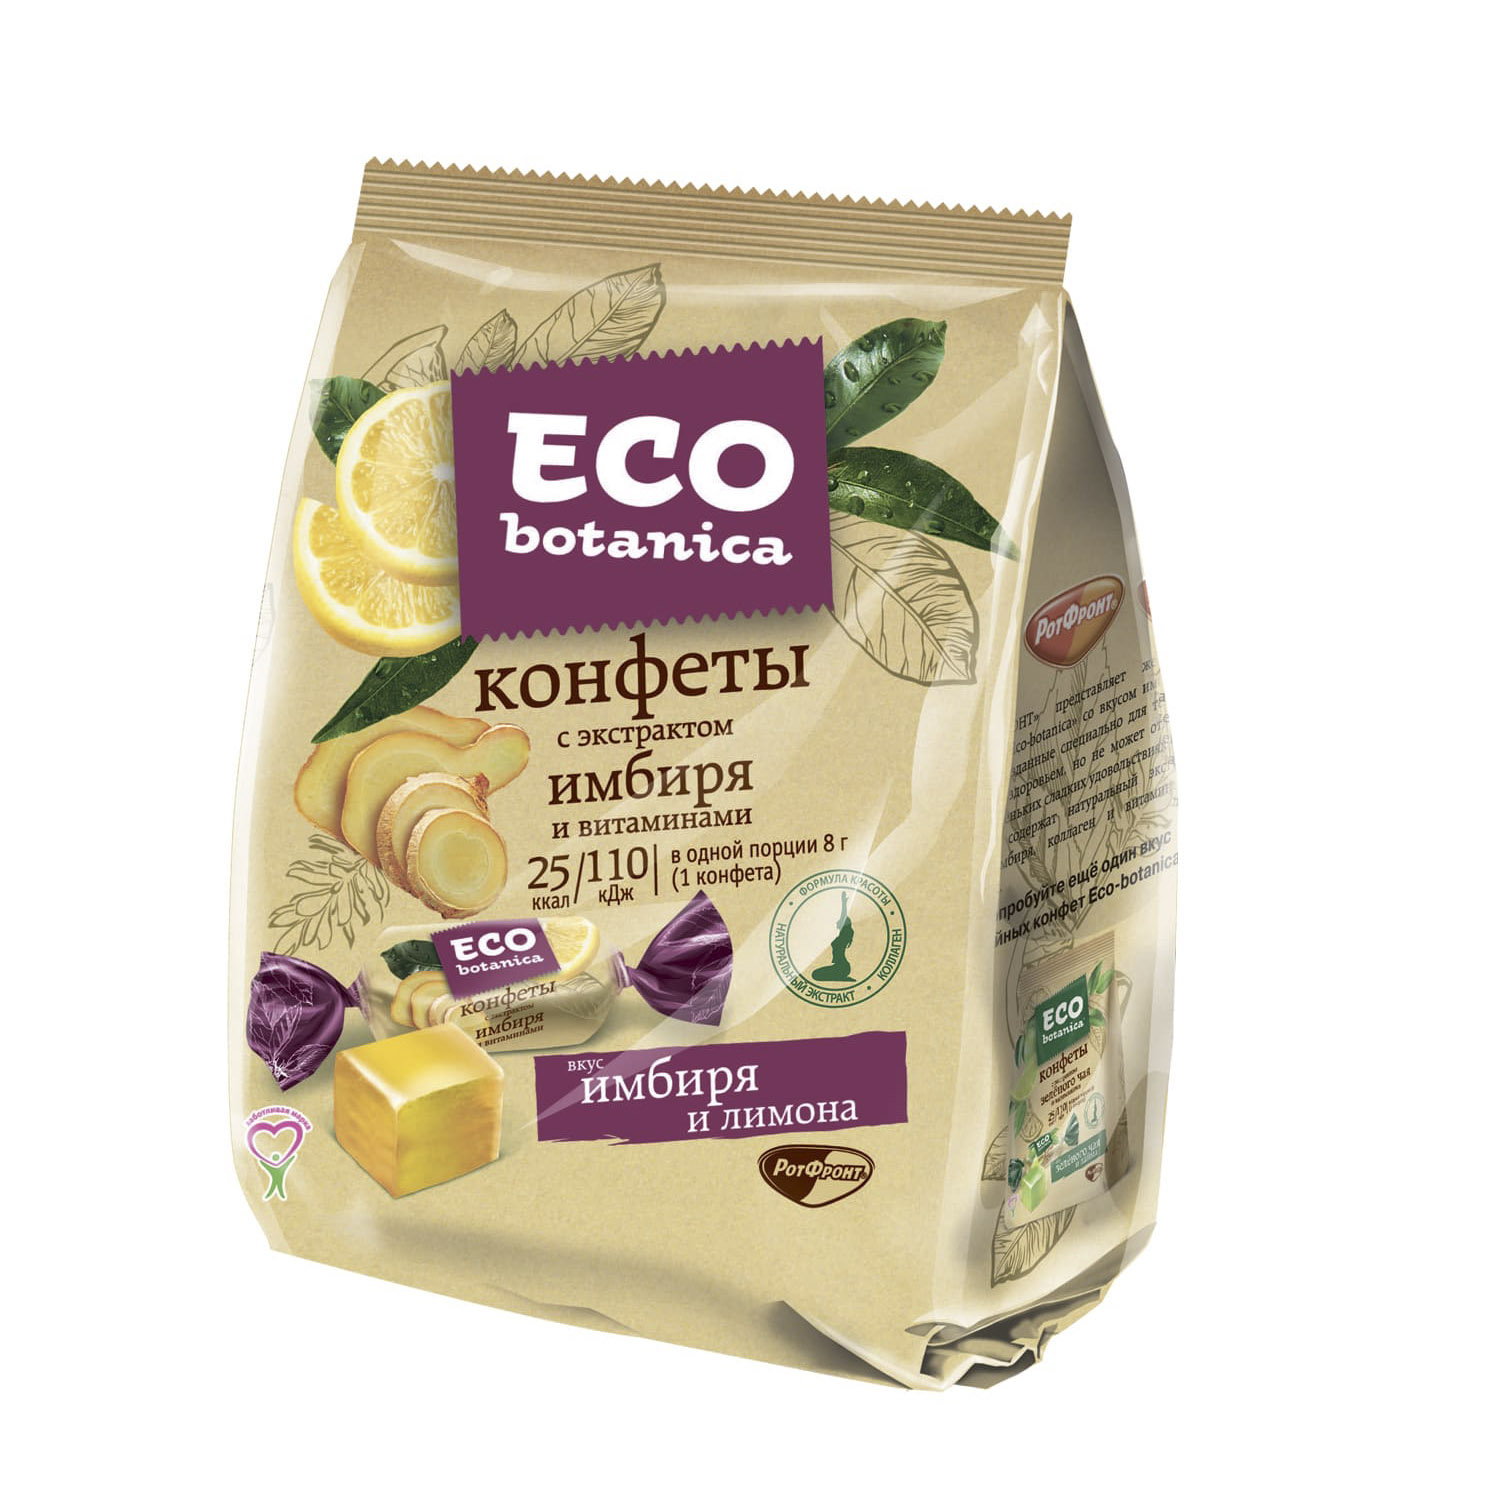 Конфеты Eco botanica с экстрактом имбиря и витаминами 200 г конфеты смузи eco botanica ананас манго 150 г